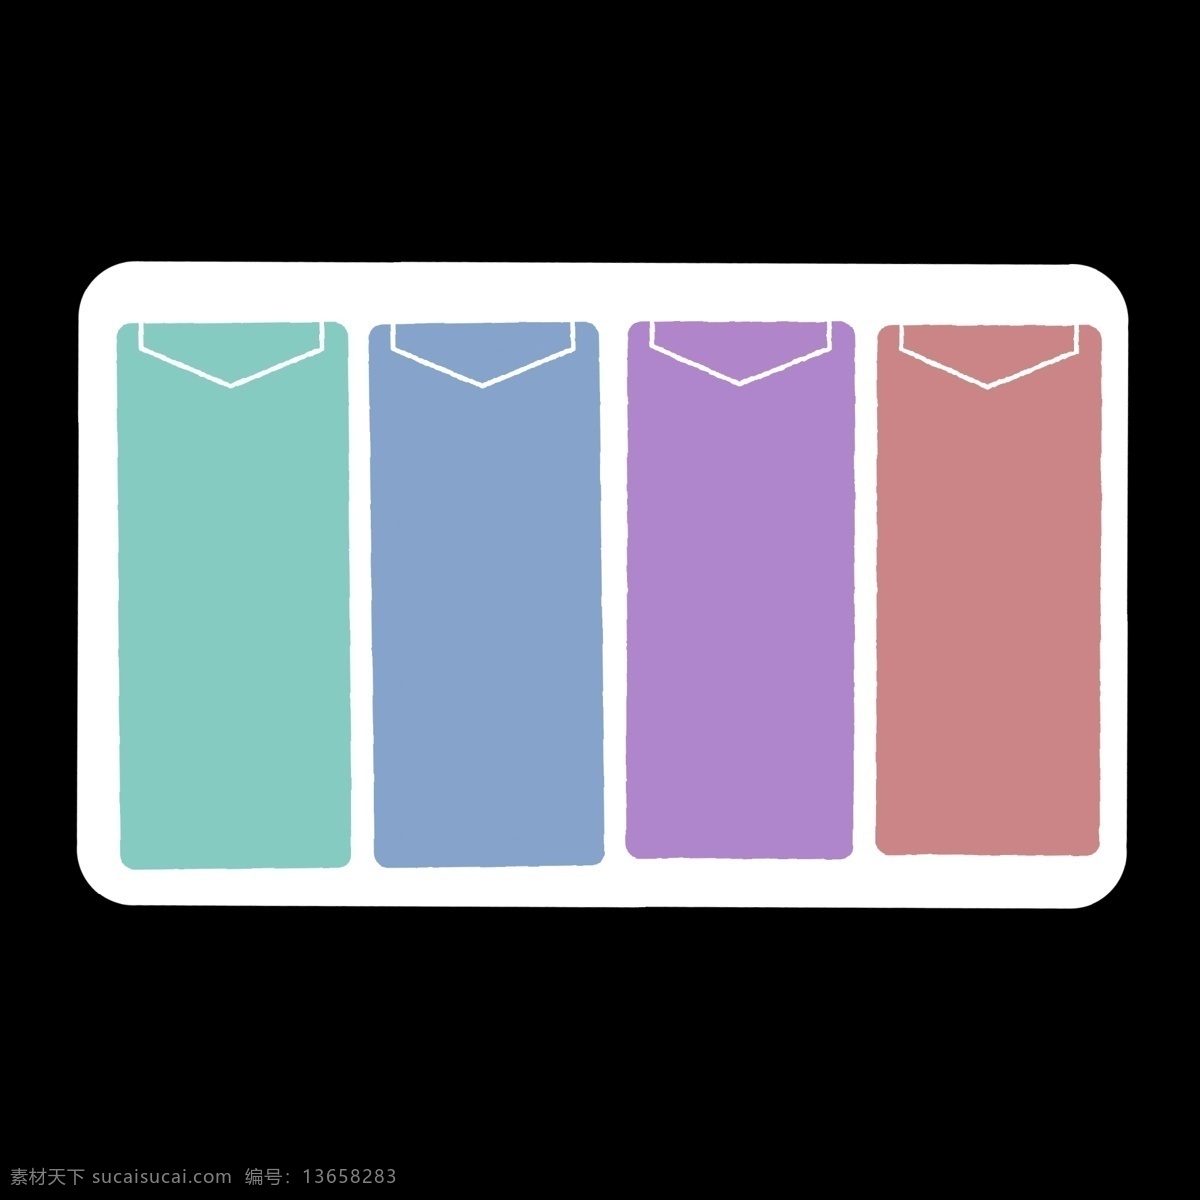 彩色 信封 分类 标识 信封样式 蓝色 紫色 红色 分别 类目表 不同 区别 区分开 ppt专用 卡通 简单 简约 简洁